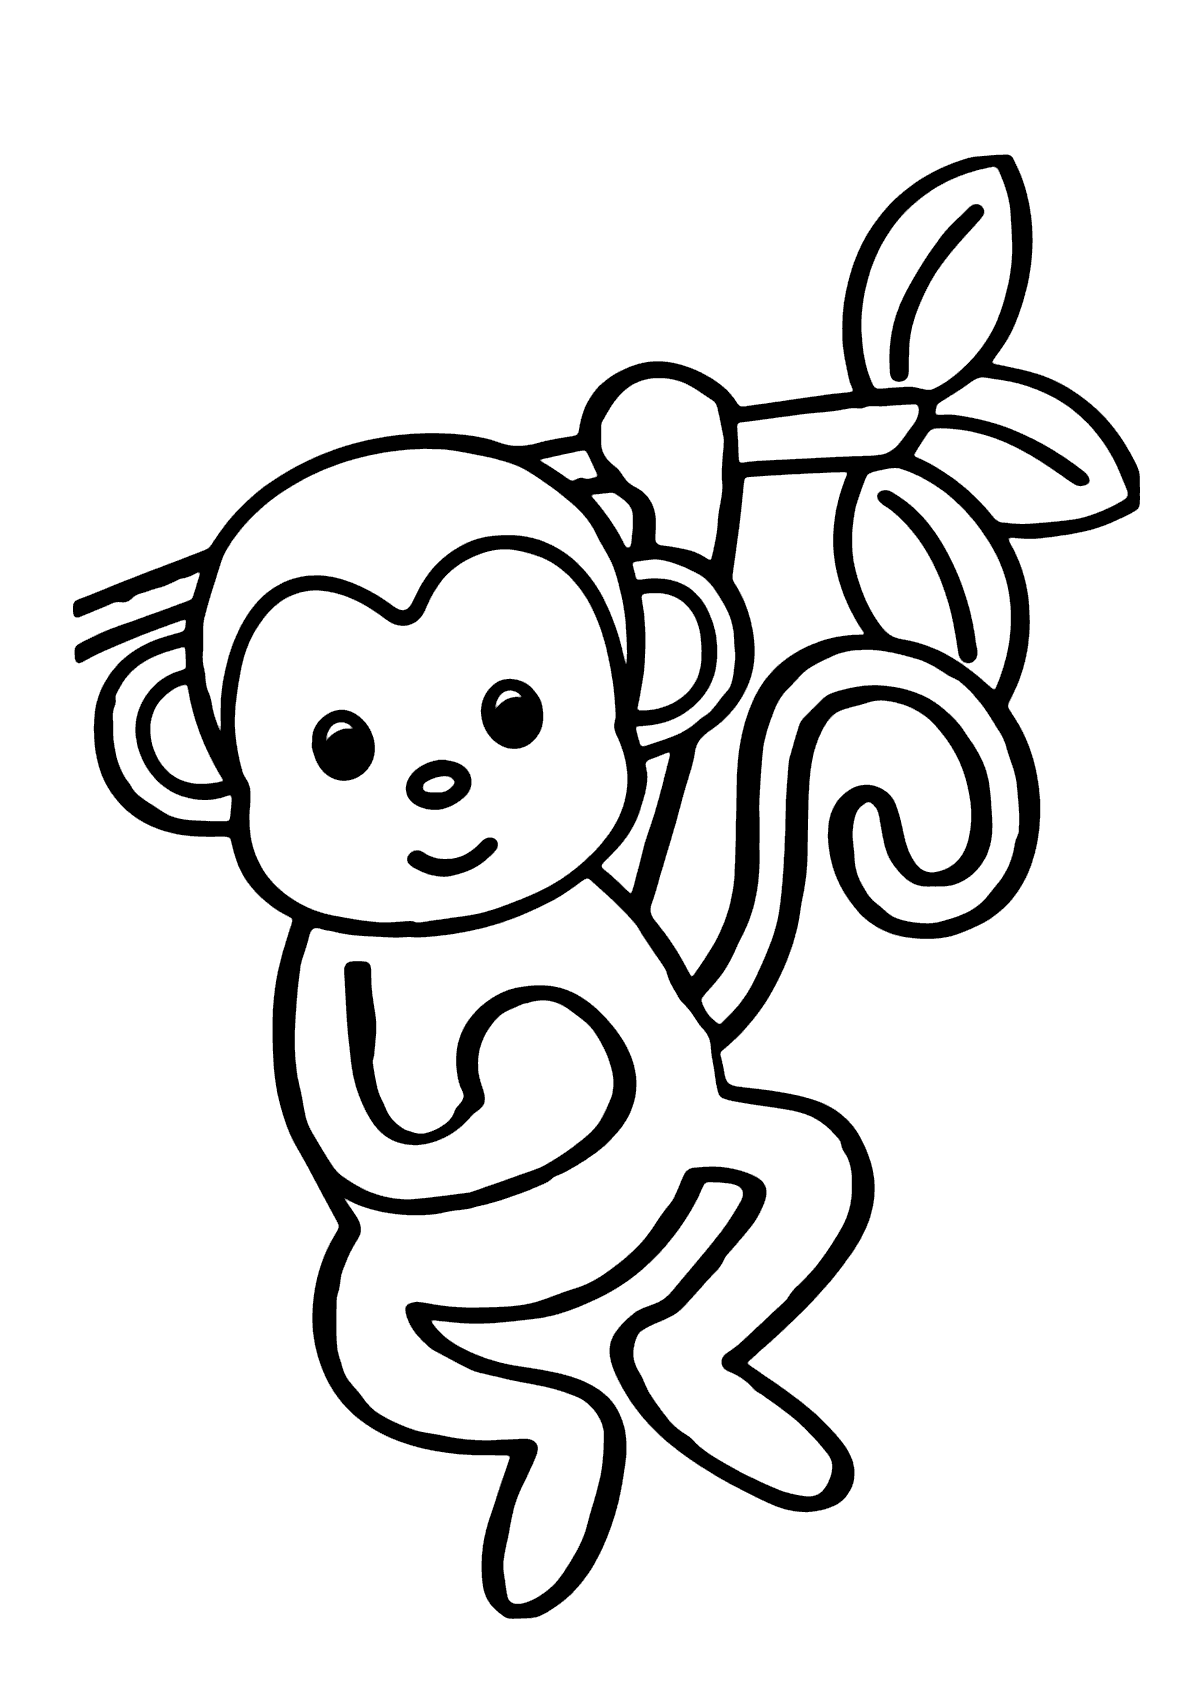 Desenhos para colorir com macacos - Desenhos para colorir